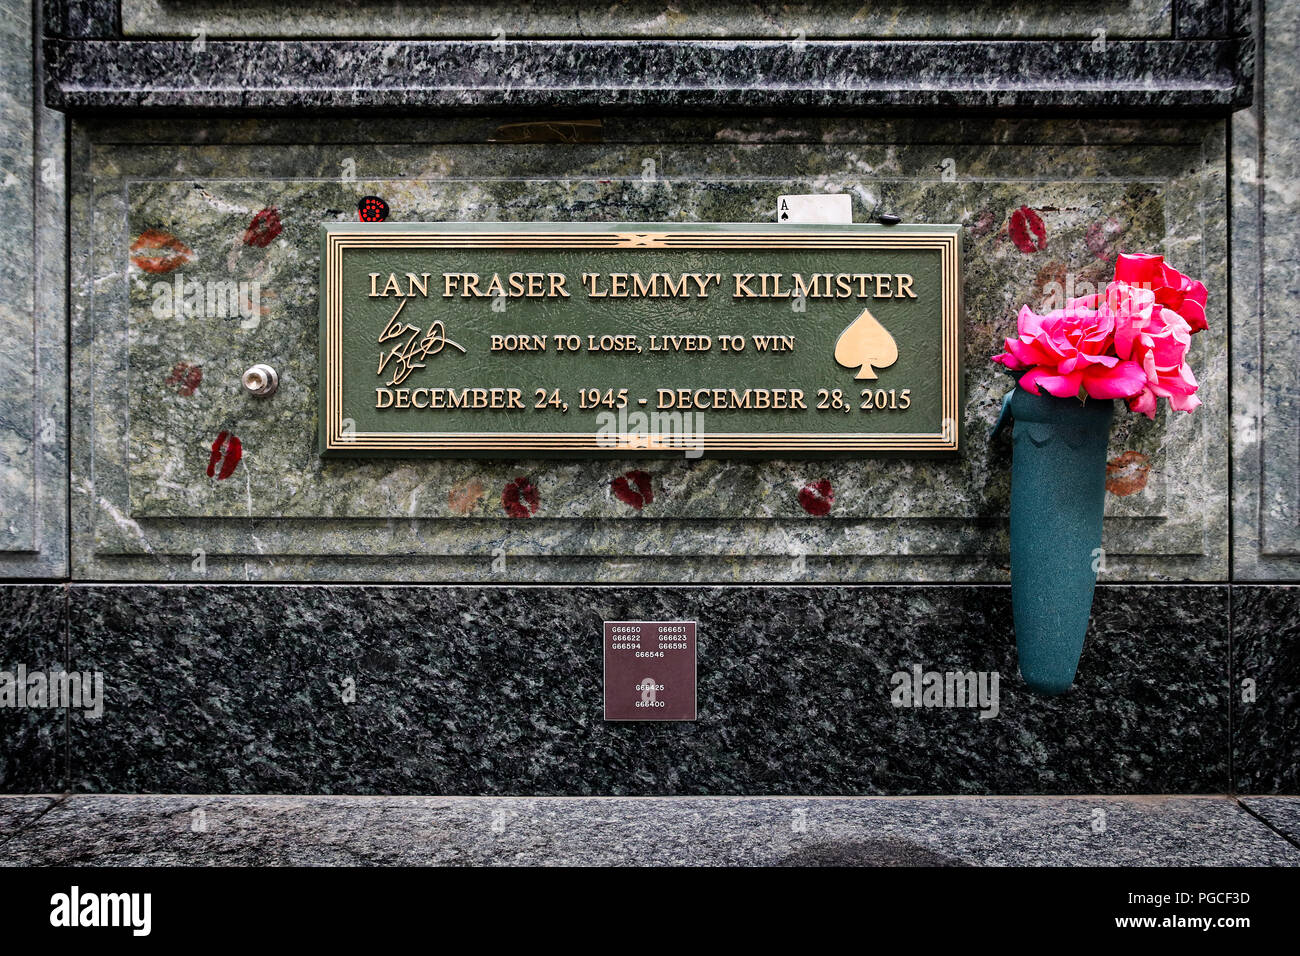 Los Angeles, Stati Uniti d'America - 24 Luglio 2017: Ian Fraser Lemmy Kilmister grave a Forrest Lawn Memorial Park di Glendale. Egli è il fondatore e il cantante dei Motörhead. Foto Stock